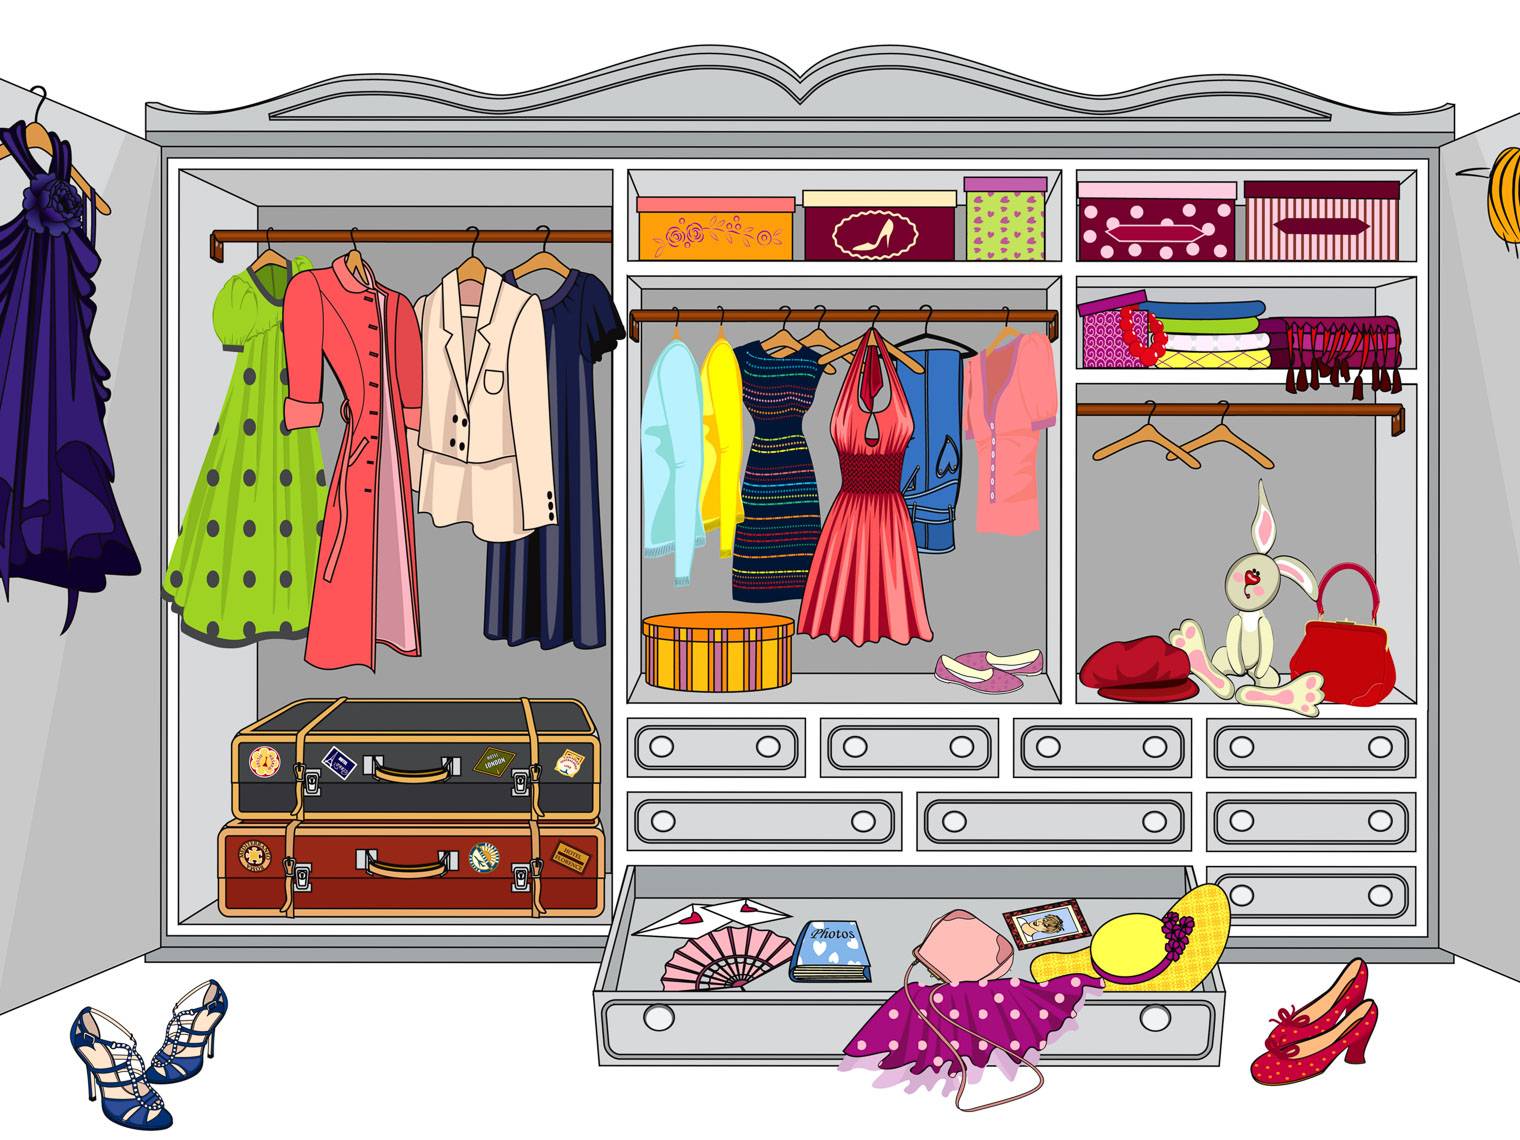 Базовый гардероб современной девушки: фасоны, фото, советы